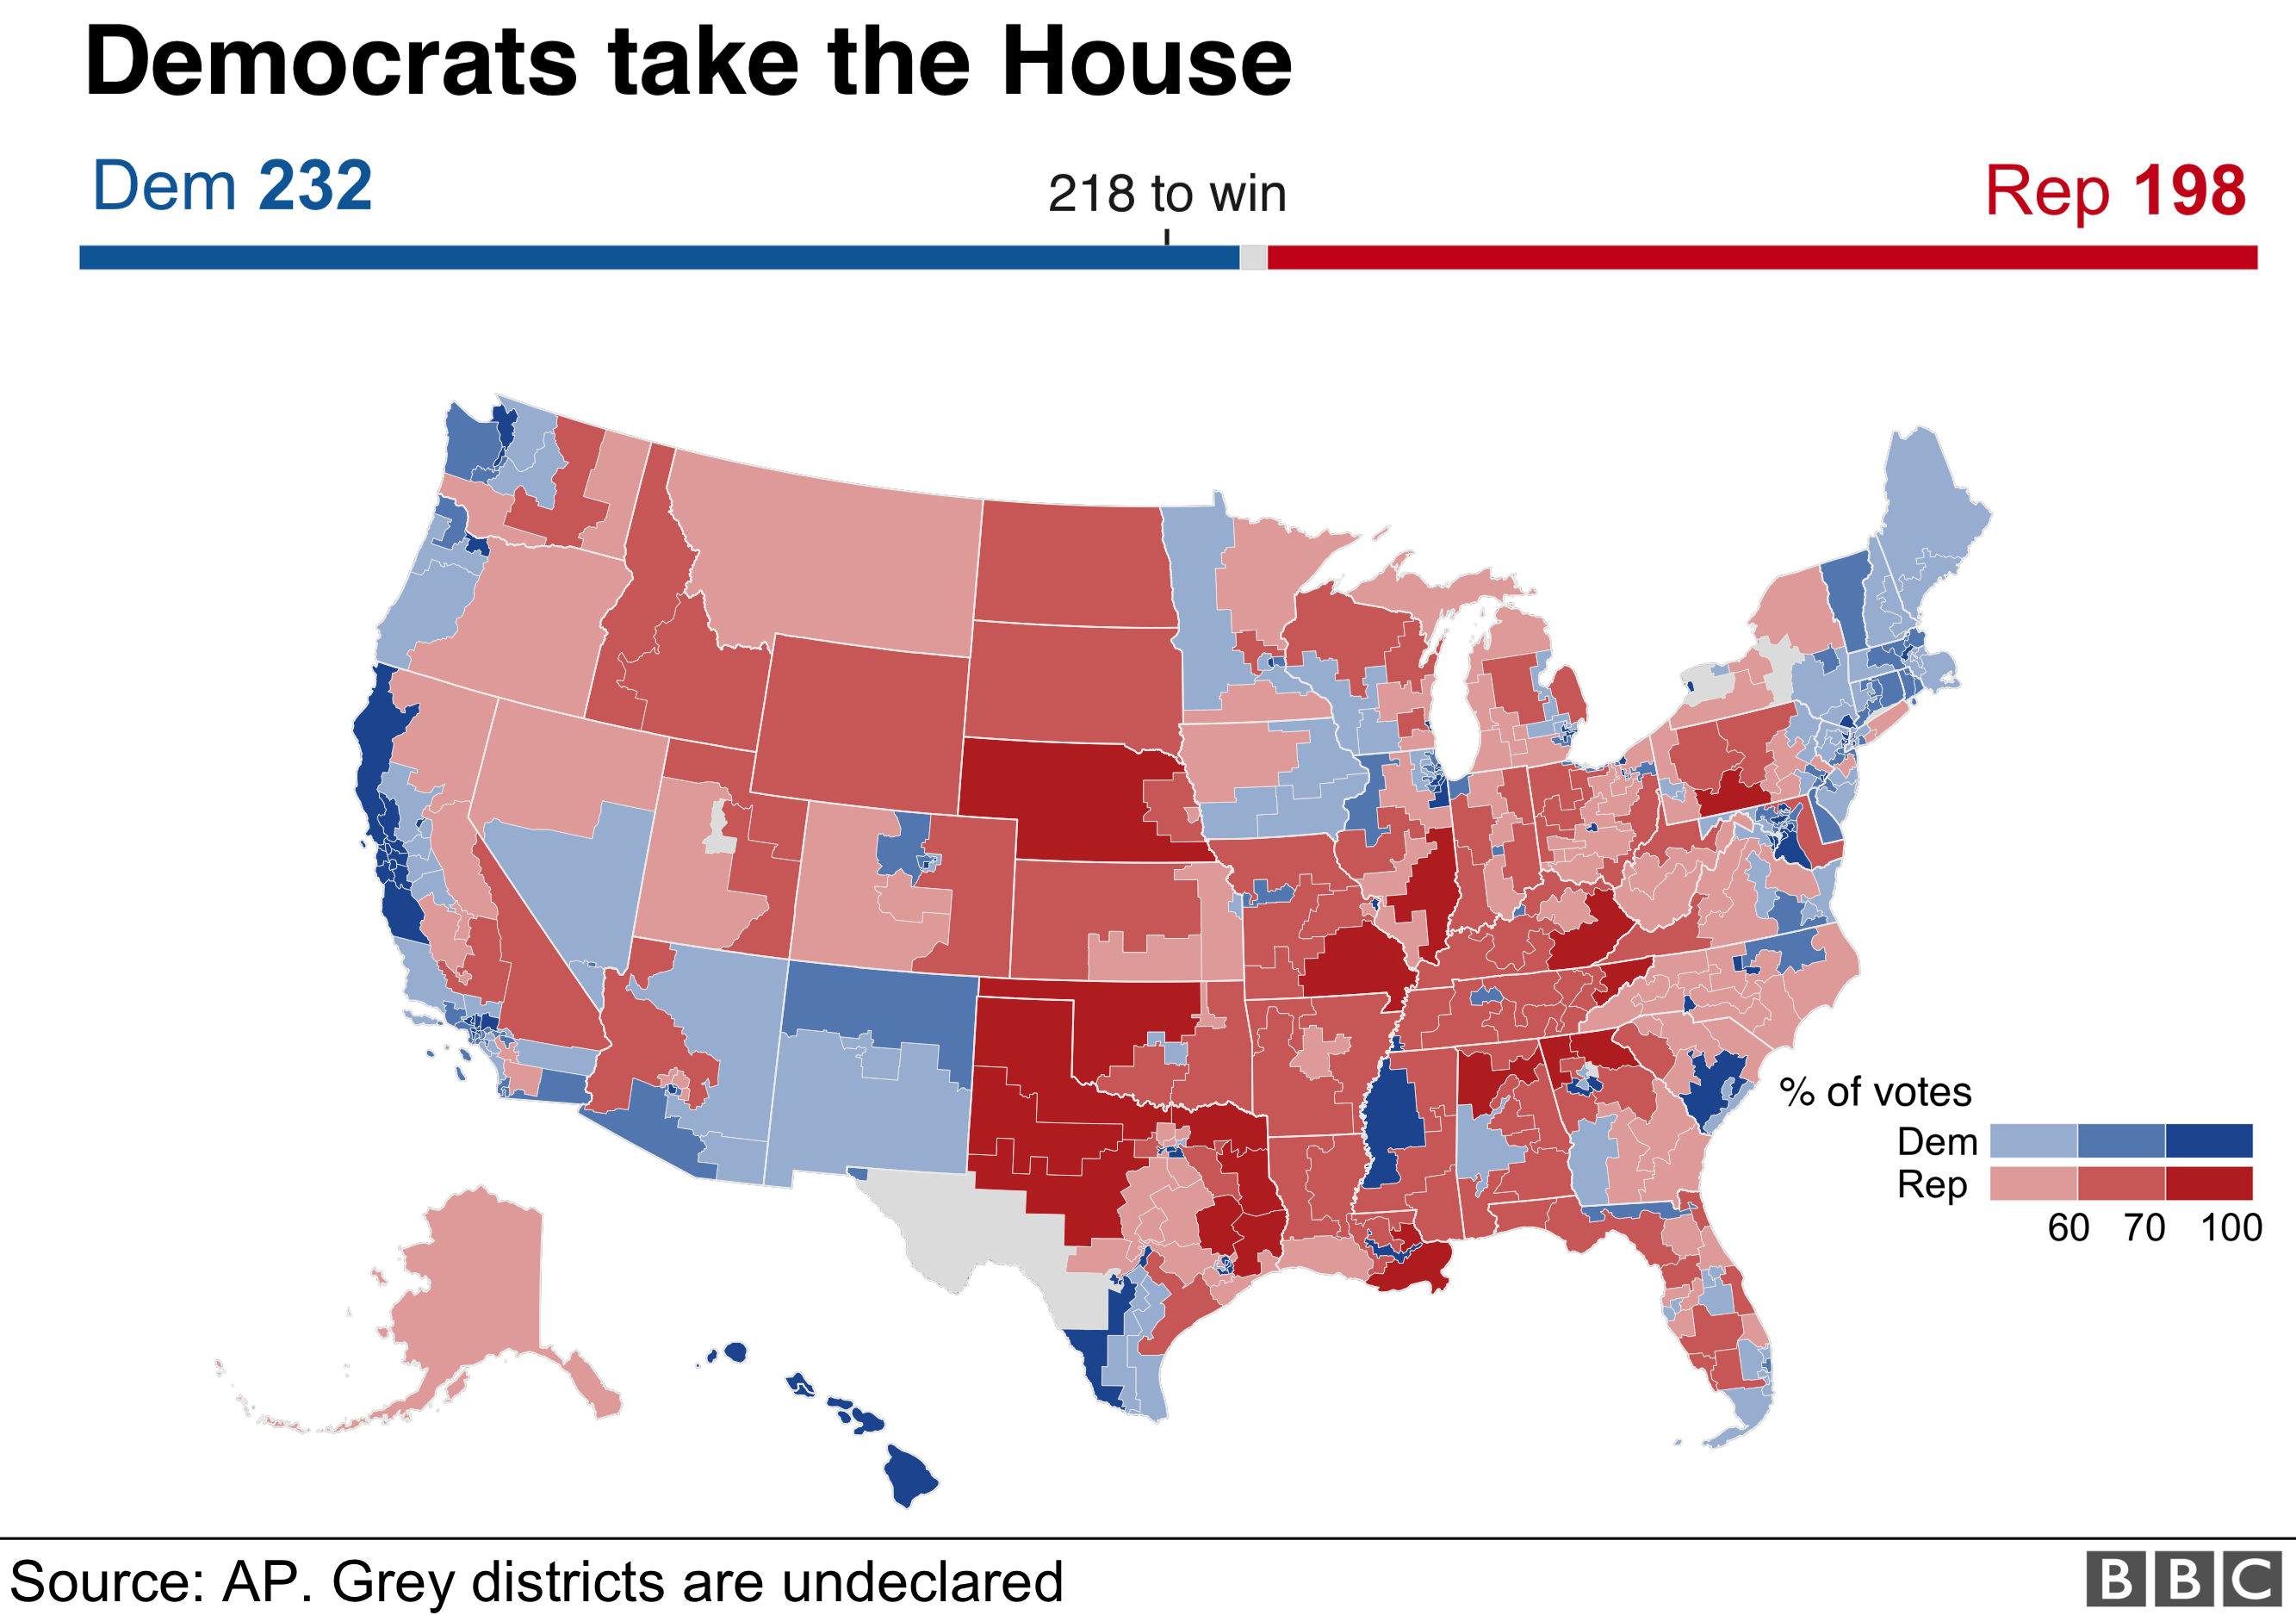 Карта, показывающая результаты для Палаты представителей, с демократами на 232 и республиканцами на 198